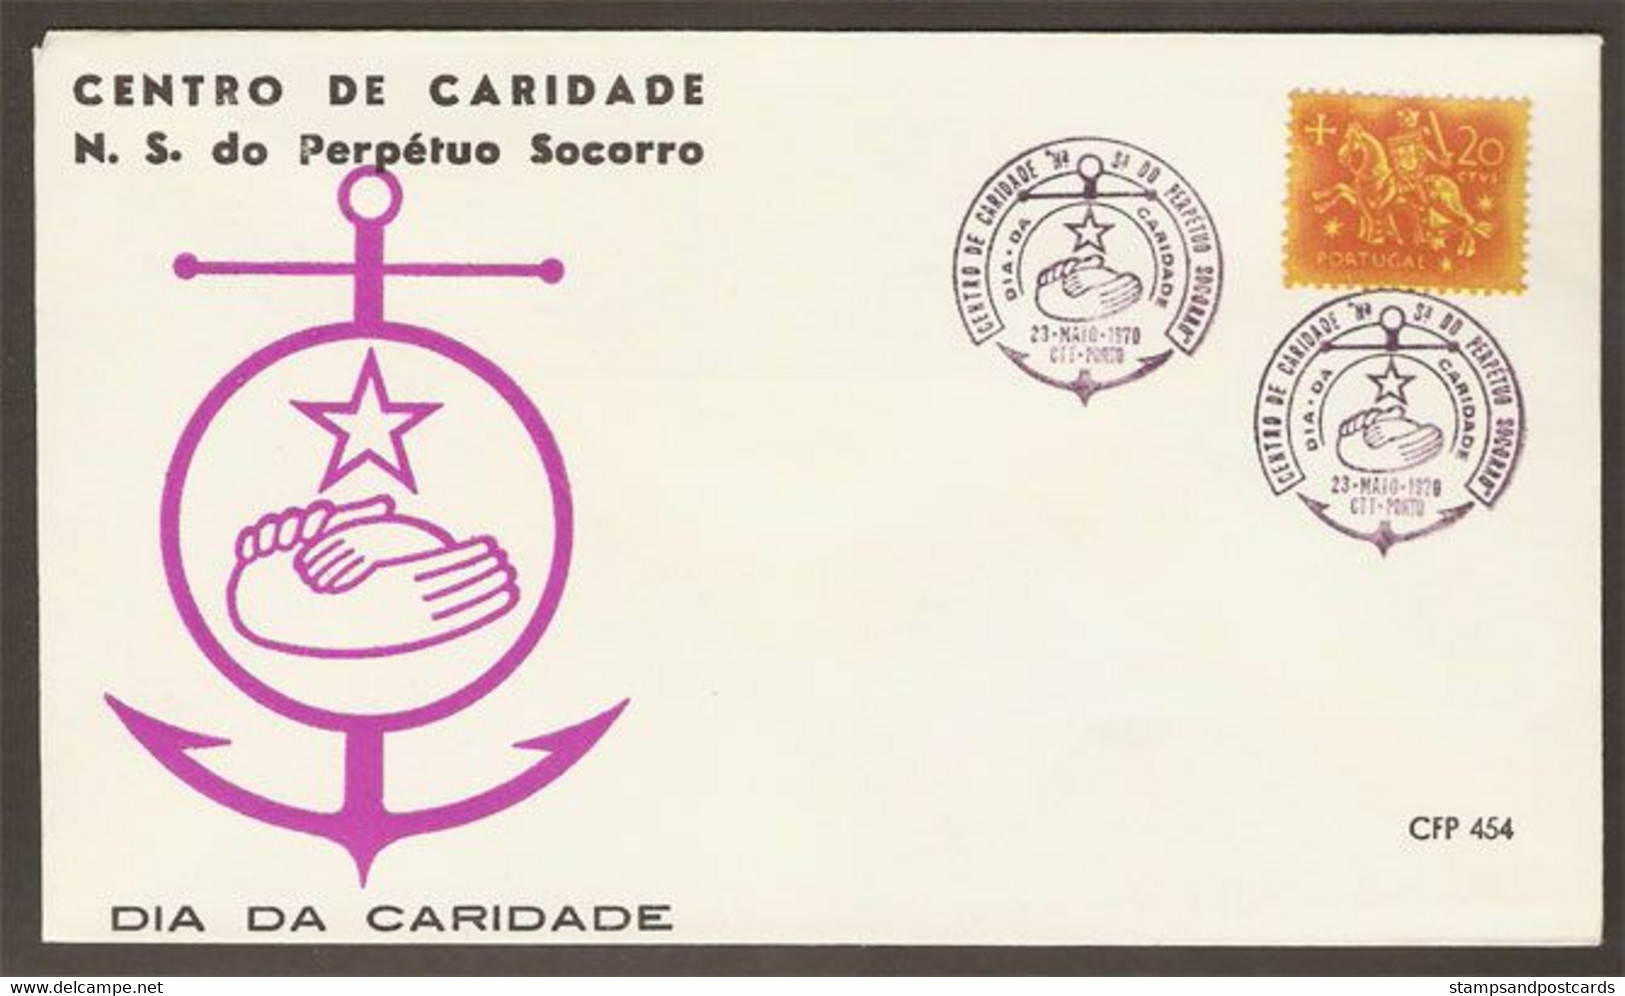 Portugal Cachet Commemoratif Ancre Centre De Charité Porto 1970 Event Postmark Charity Center Anchor - Flammes & Oblitérations